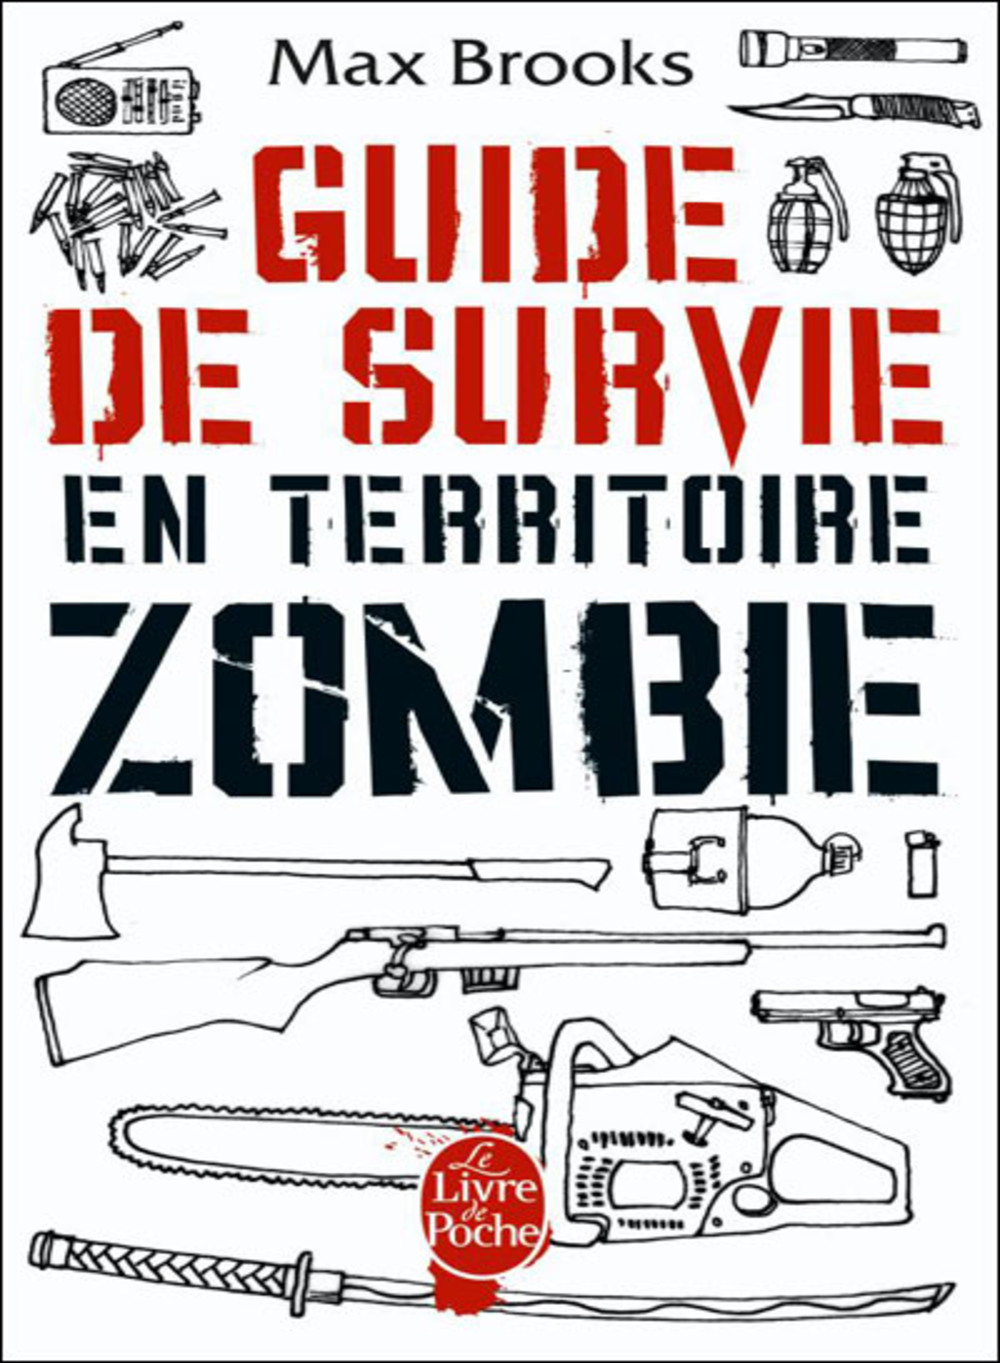 Livres de survie - Guide de survie en territoire zombie Max Brooks